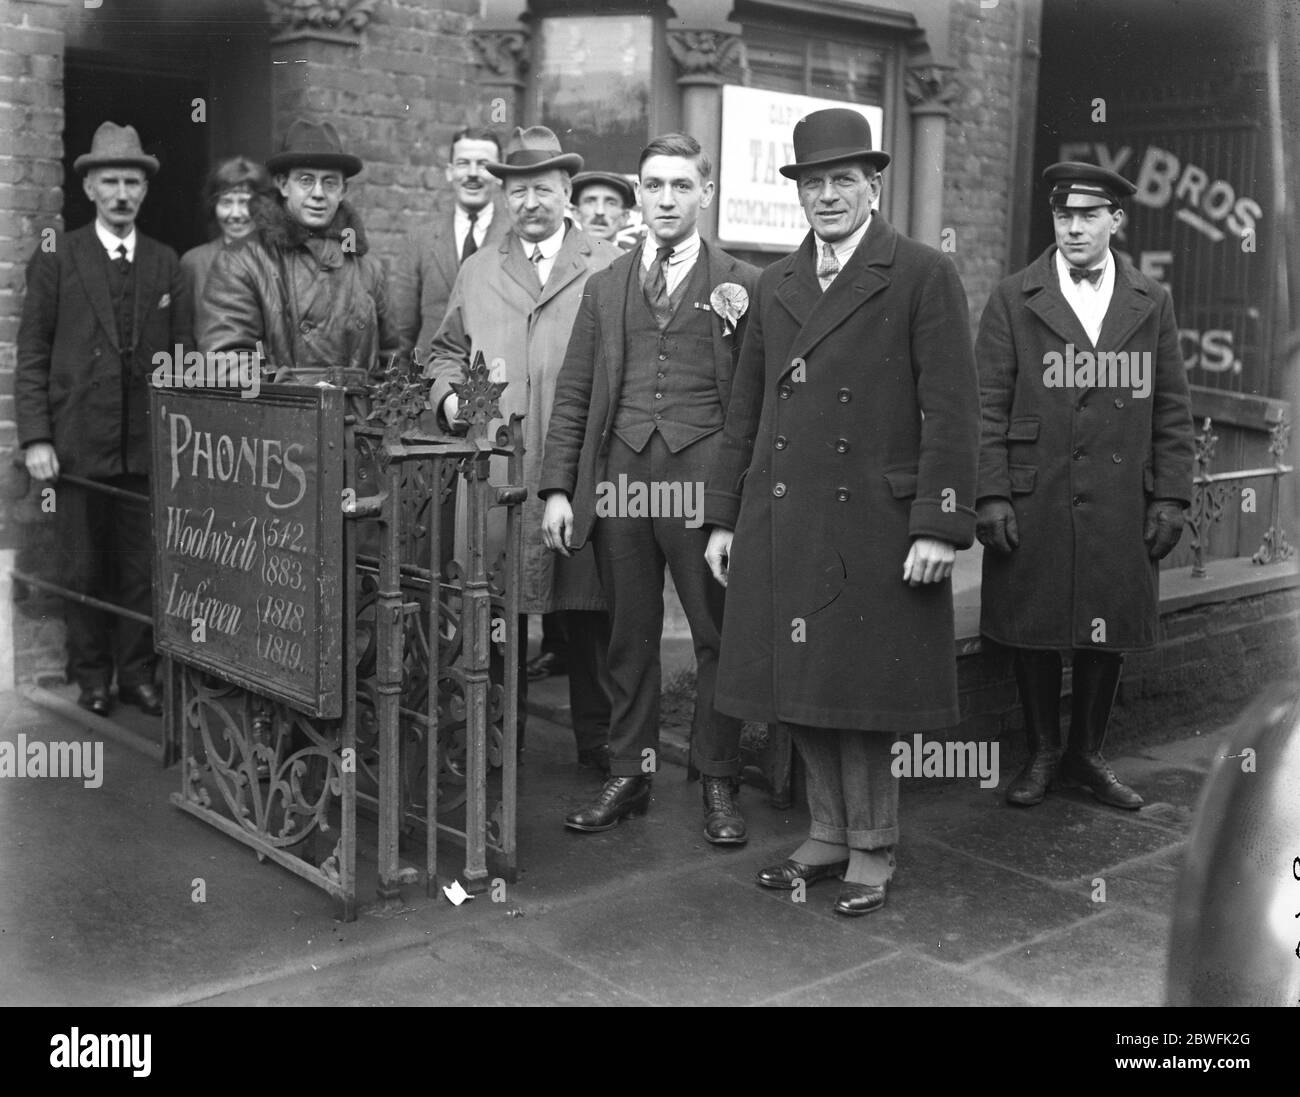 Apertura della Campagna dei Premiers il primo Ministro ha aperto la sua campagna al Queens Hall Lord Young and Colonel , Honorey F S Jackson, il direttore del partito conservatore, arrivando il 19 novembre 1923 Foto Stock